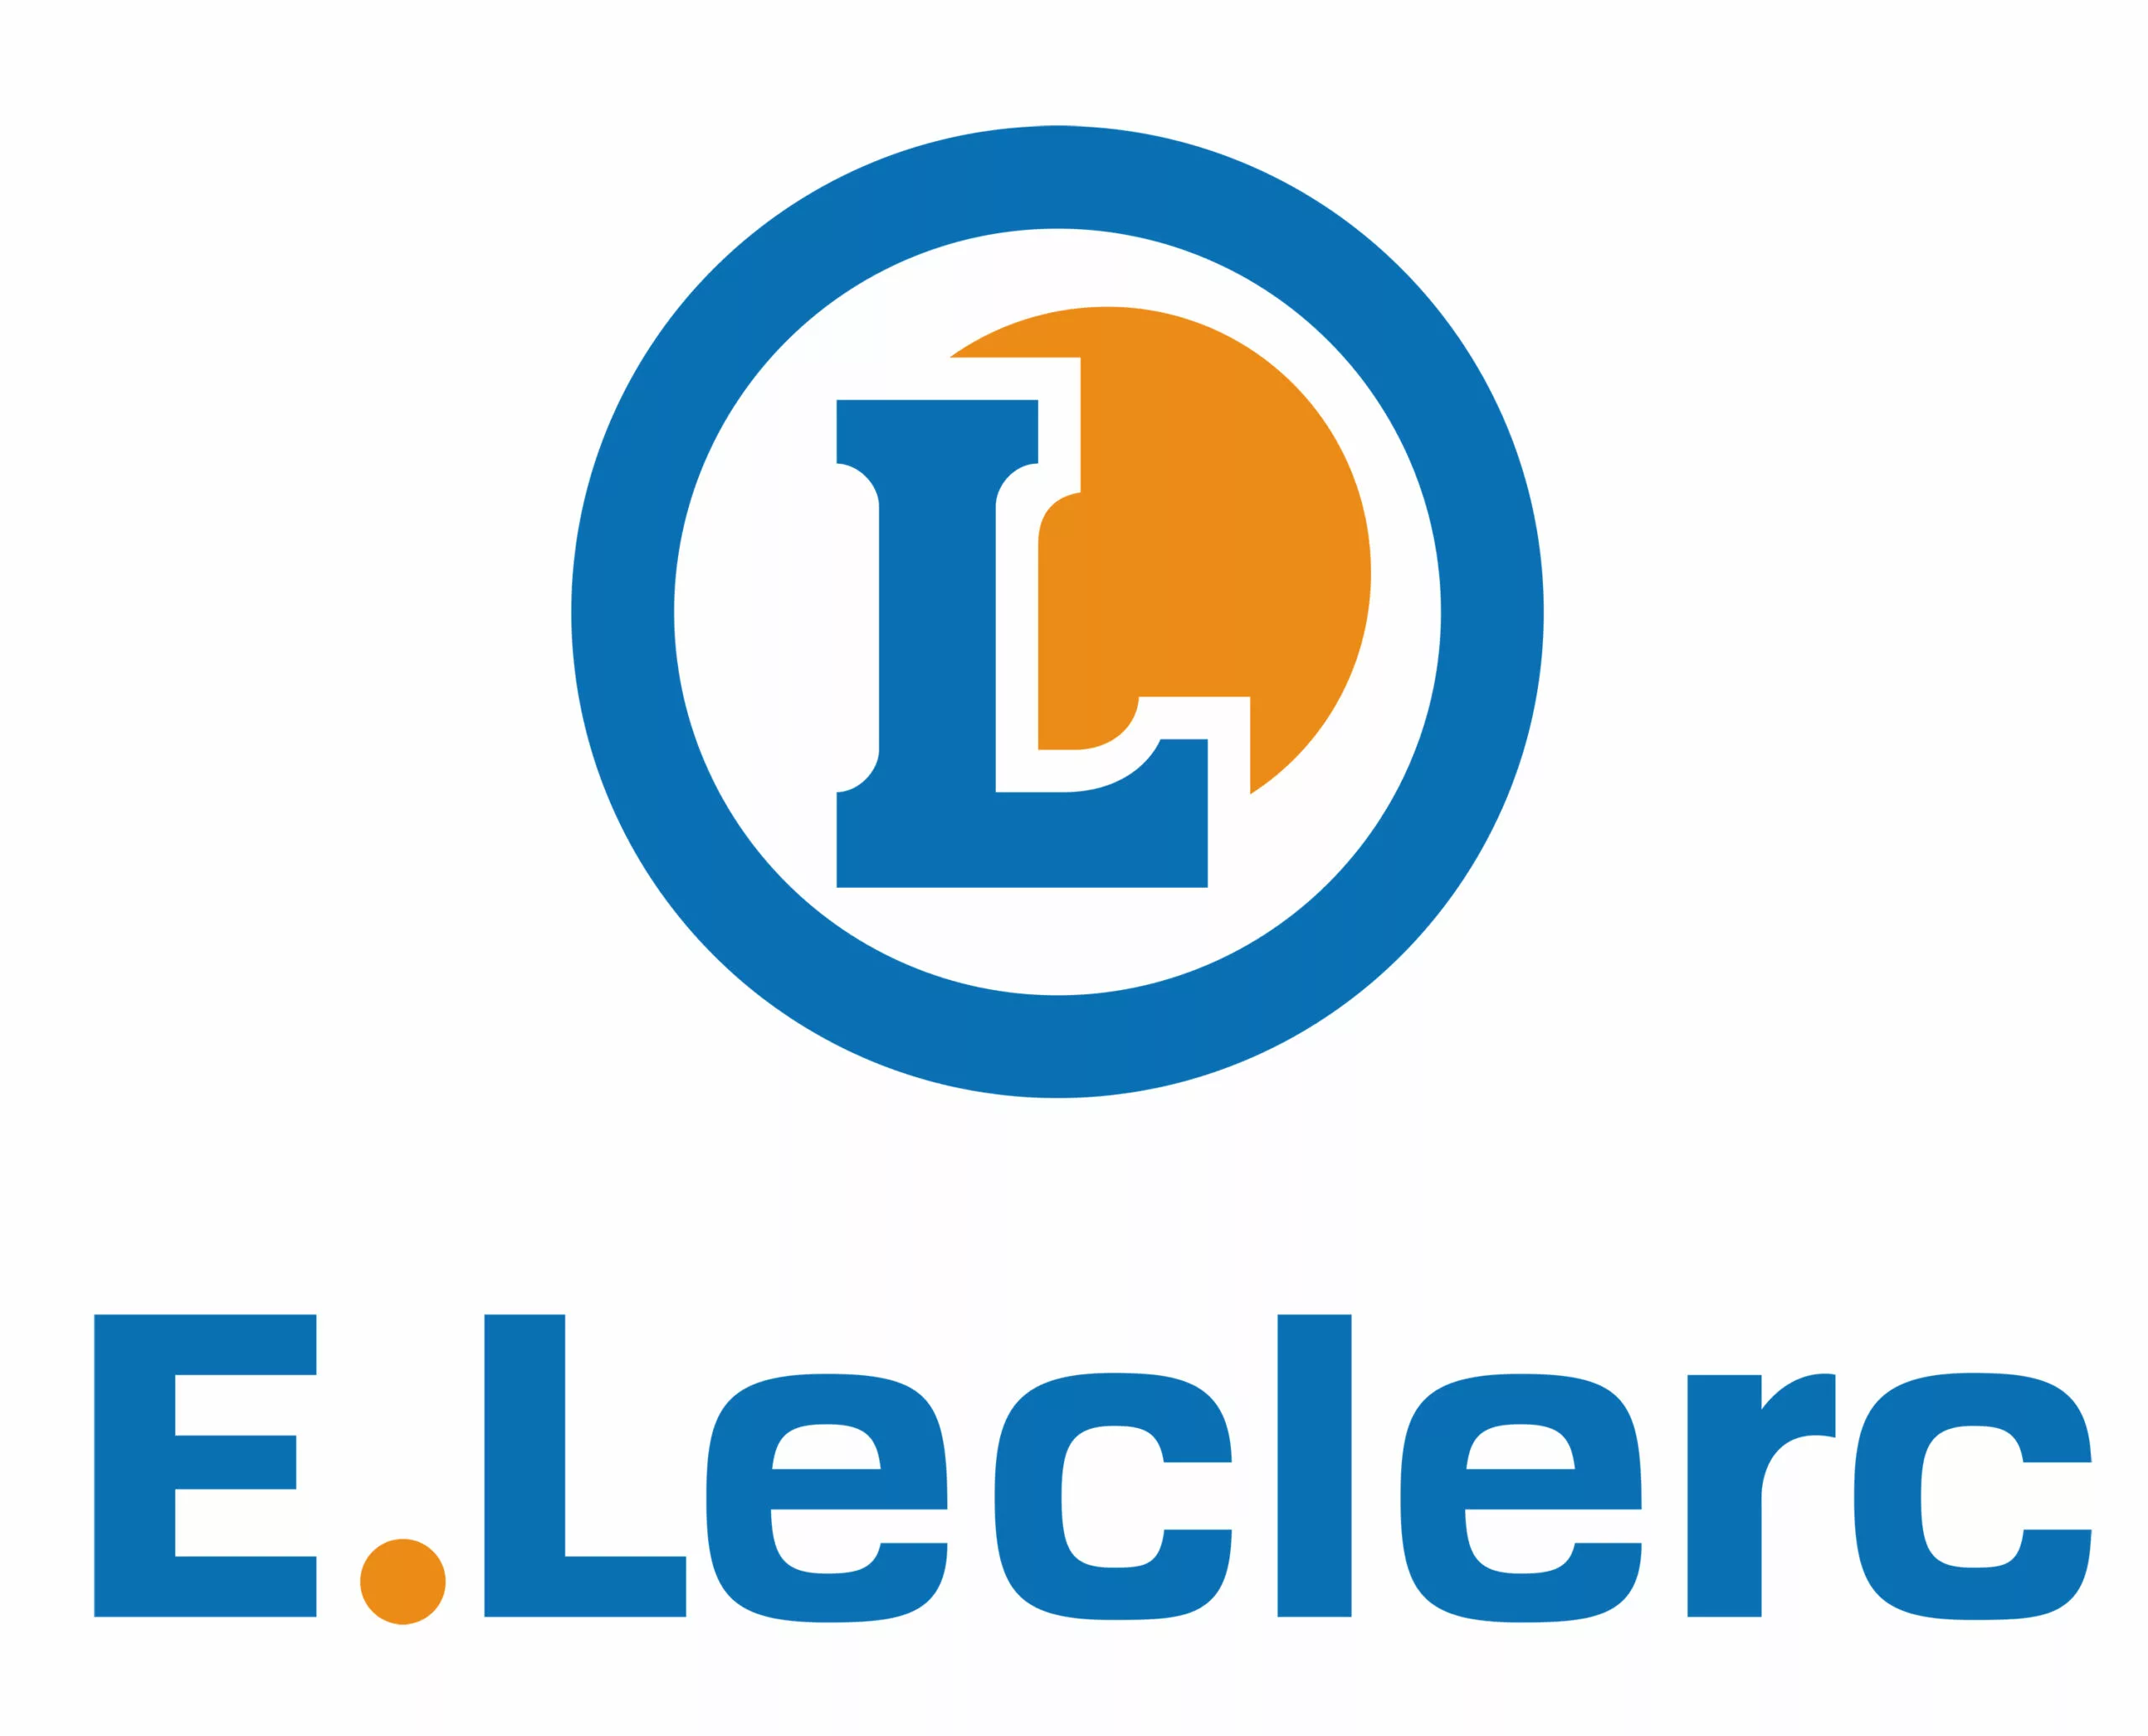 Leclerc : Brand Short Description Type Here.